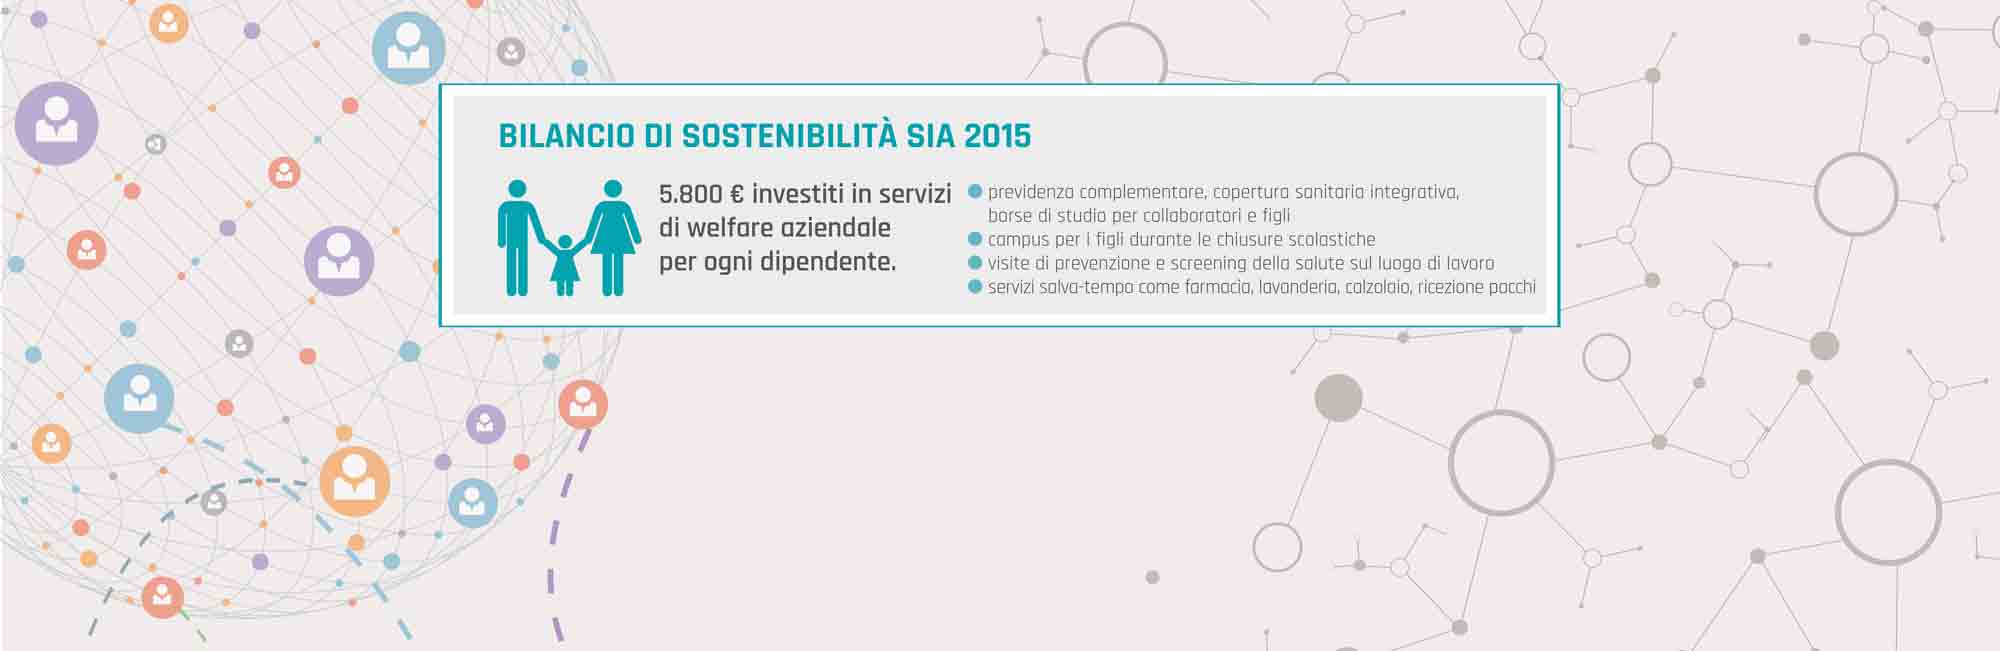 Briefing milano web graphic key figures SIA bilancio sostenibilità 2015-1